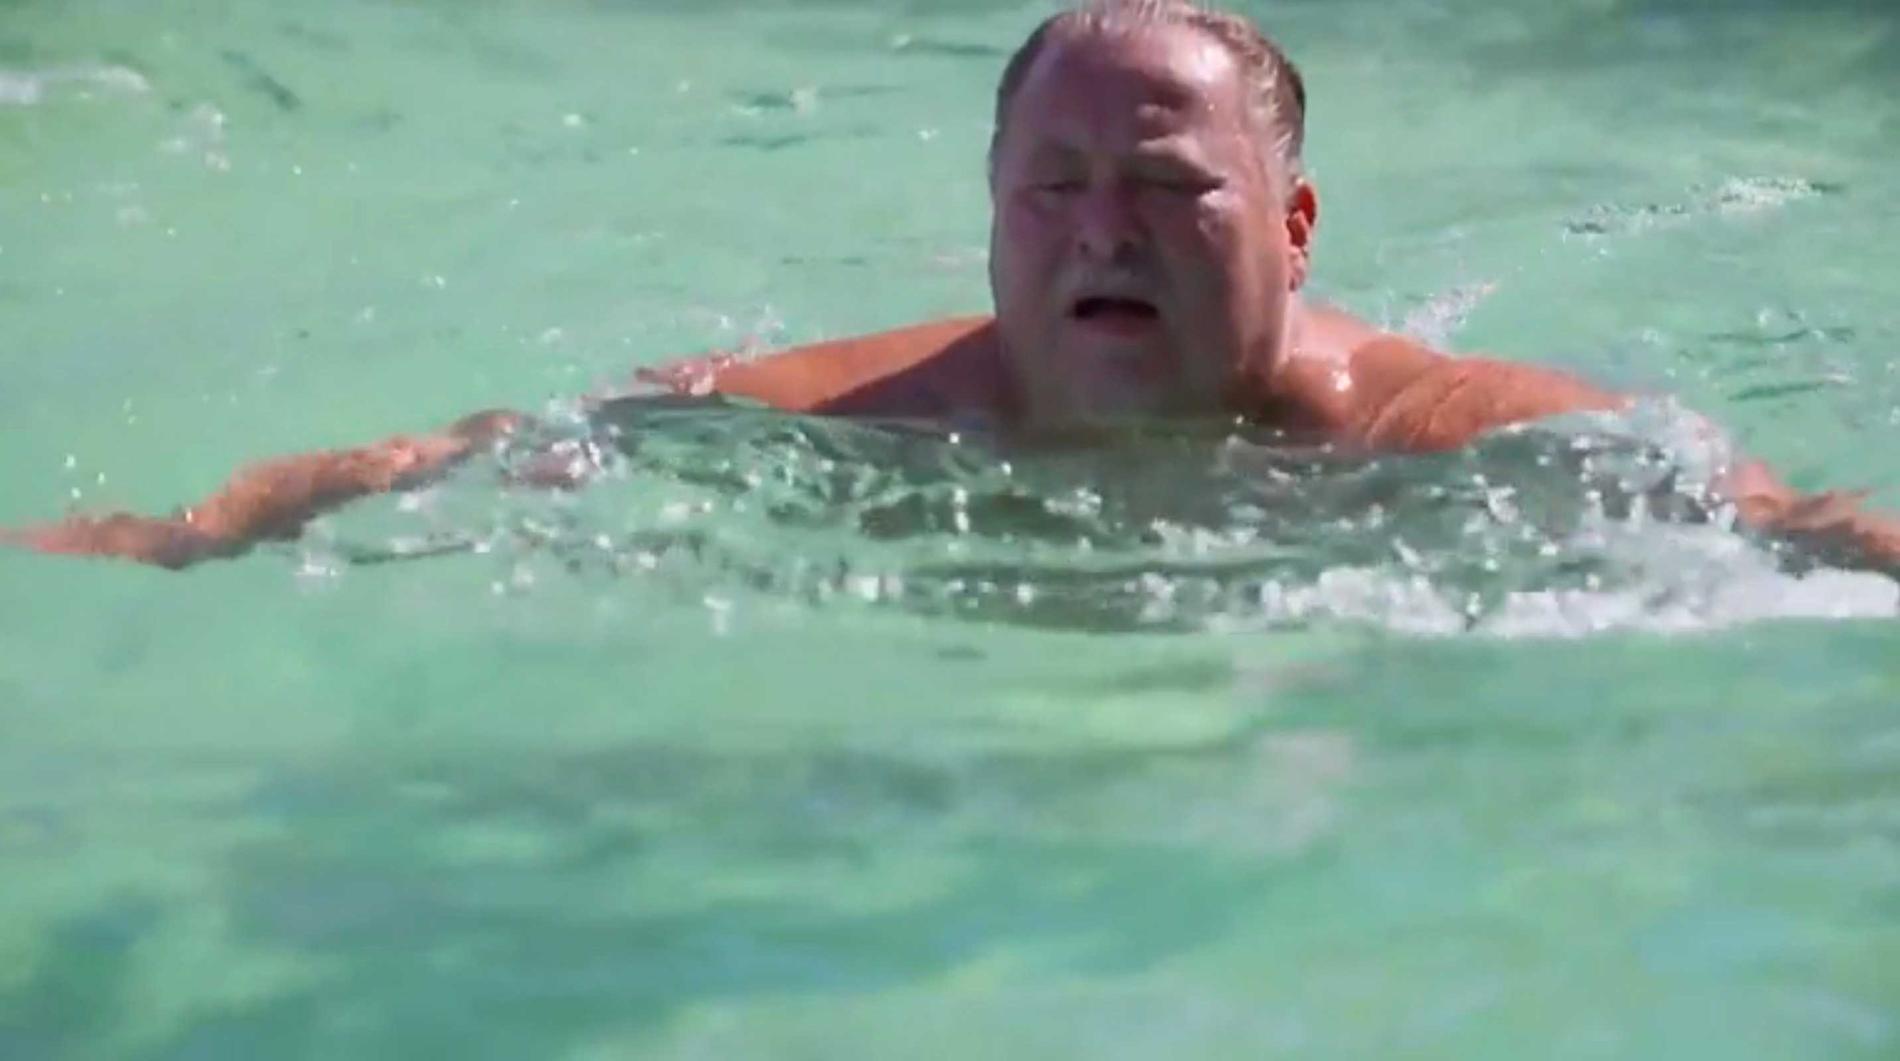 Leif-Ivan plaskar i poolen i Florida.